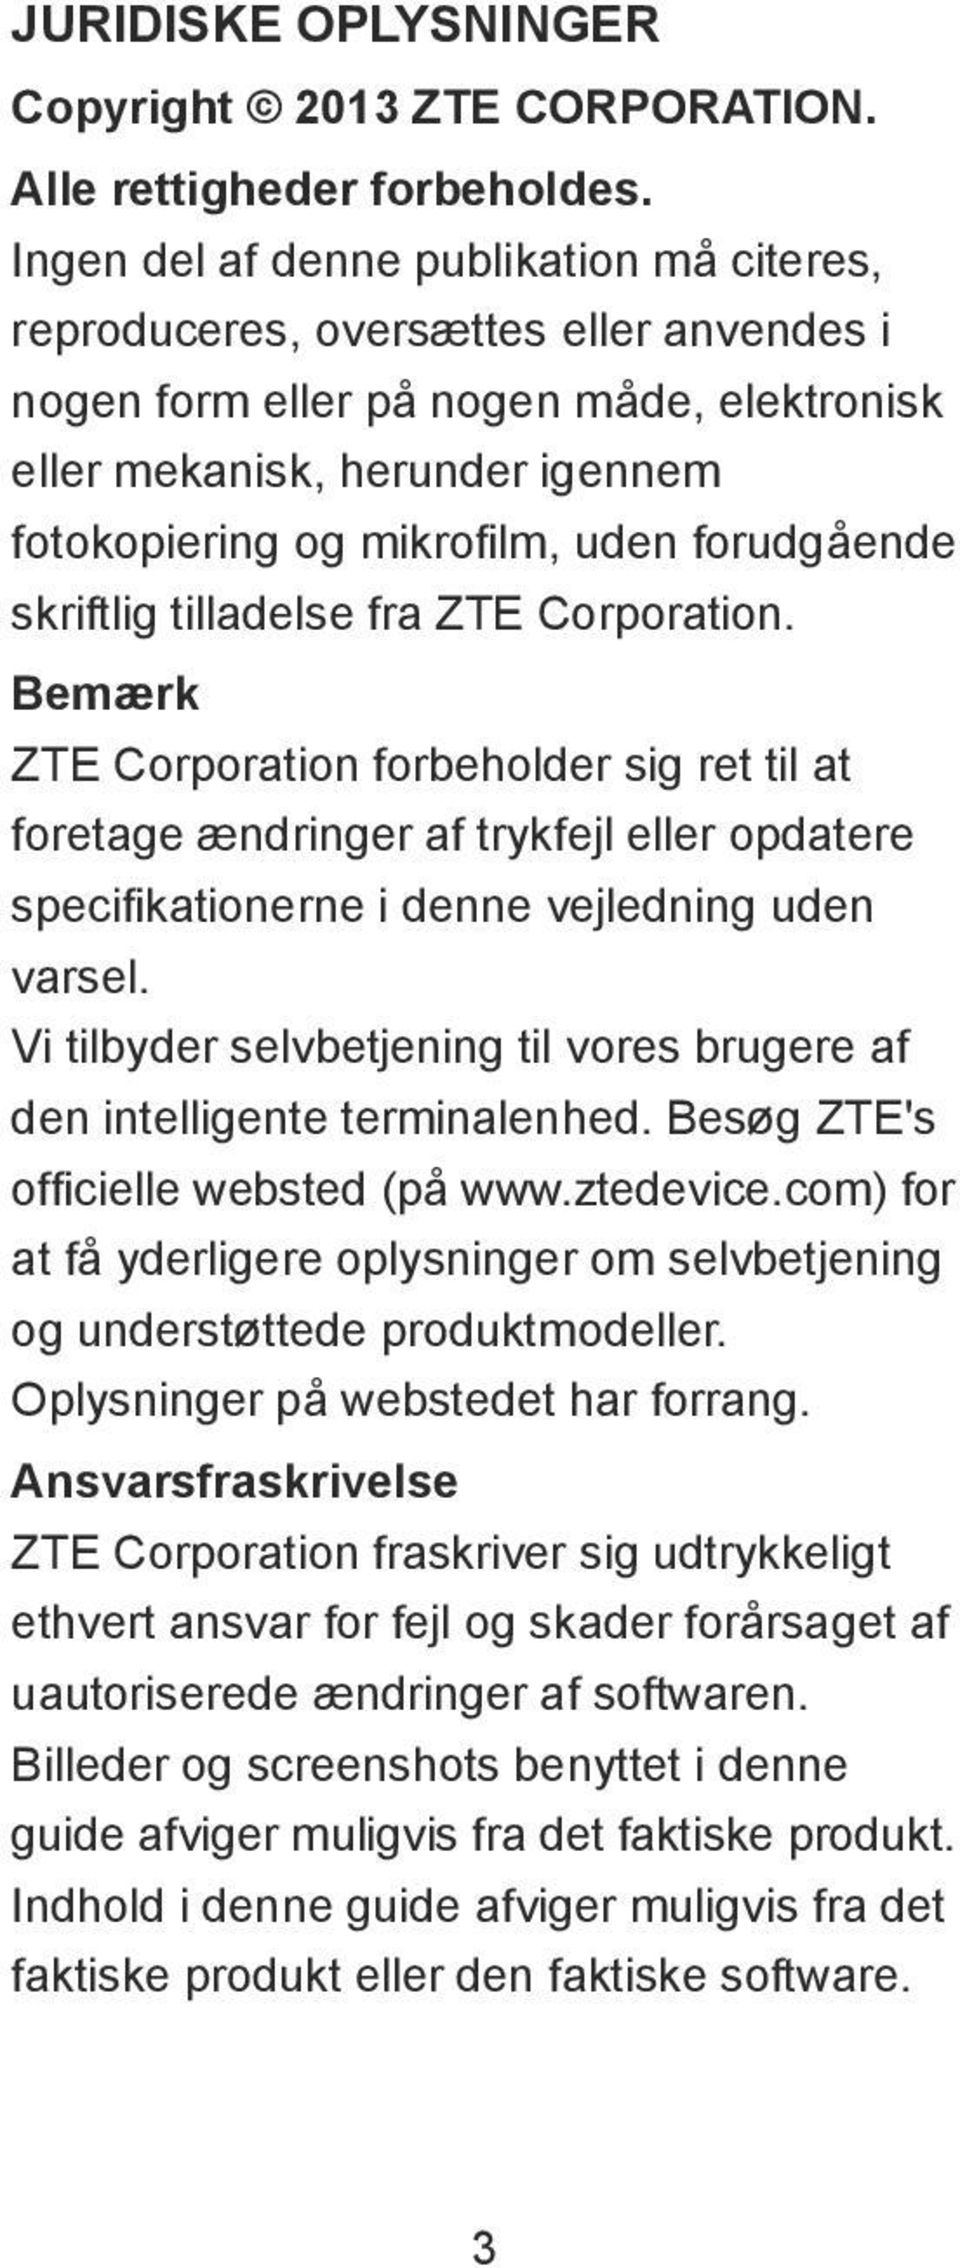 forudgеende skriftlig tilladelse fra ZTE Corporation. BemФrk ZTE Corporation forbeholder sig ret til at foretage Фndringer af trykfejl eller opdatere specifikationerne i denne vejledning uden varsel.